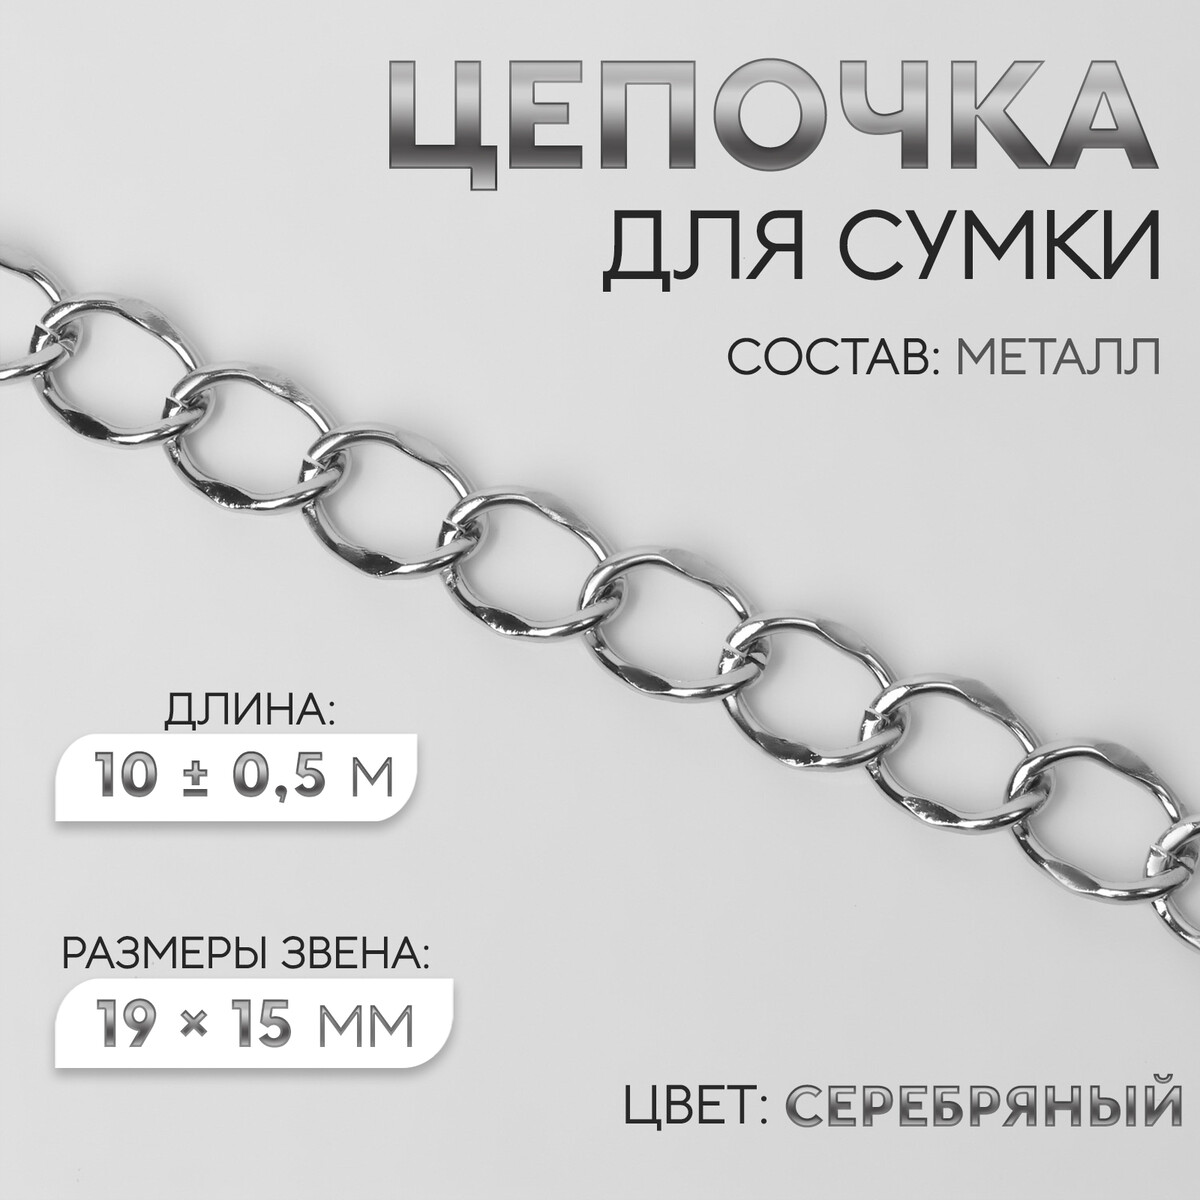 Цепочка для сумки, металлическая, 19 × 15 мм, 10 ± 0,5 м, цвет серебряный